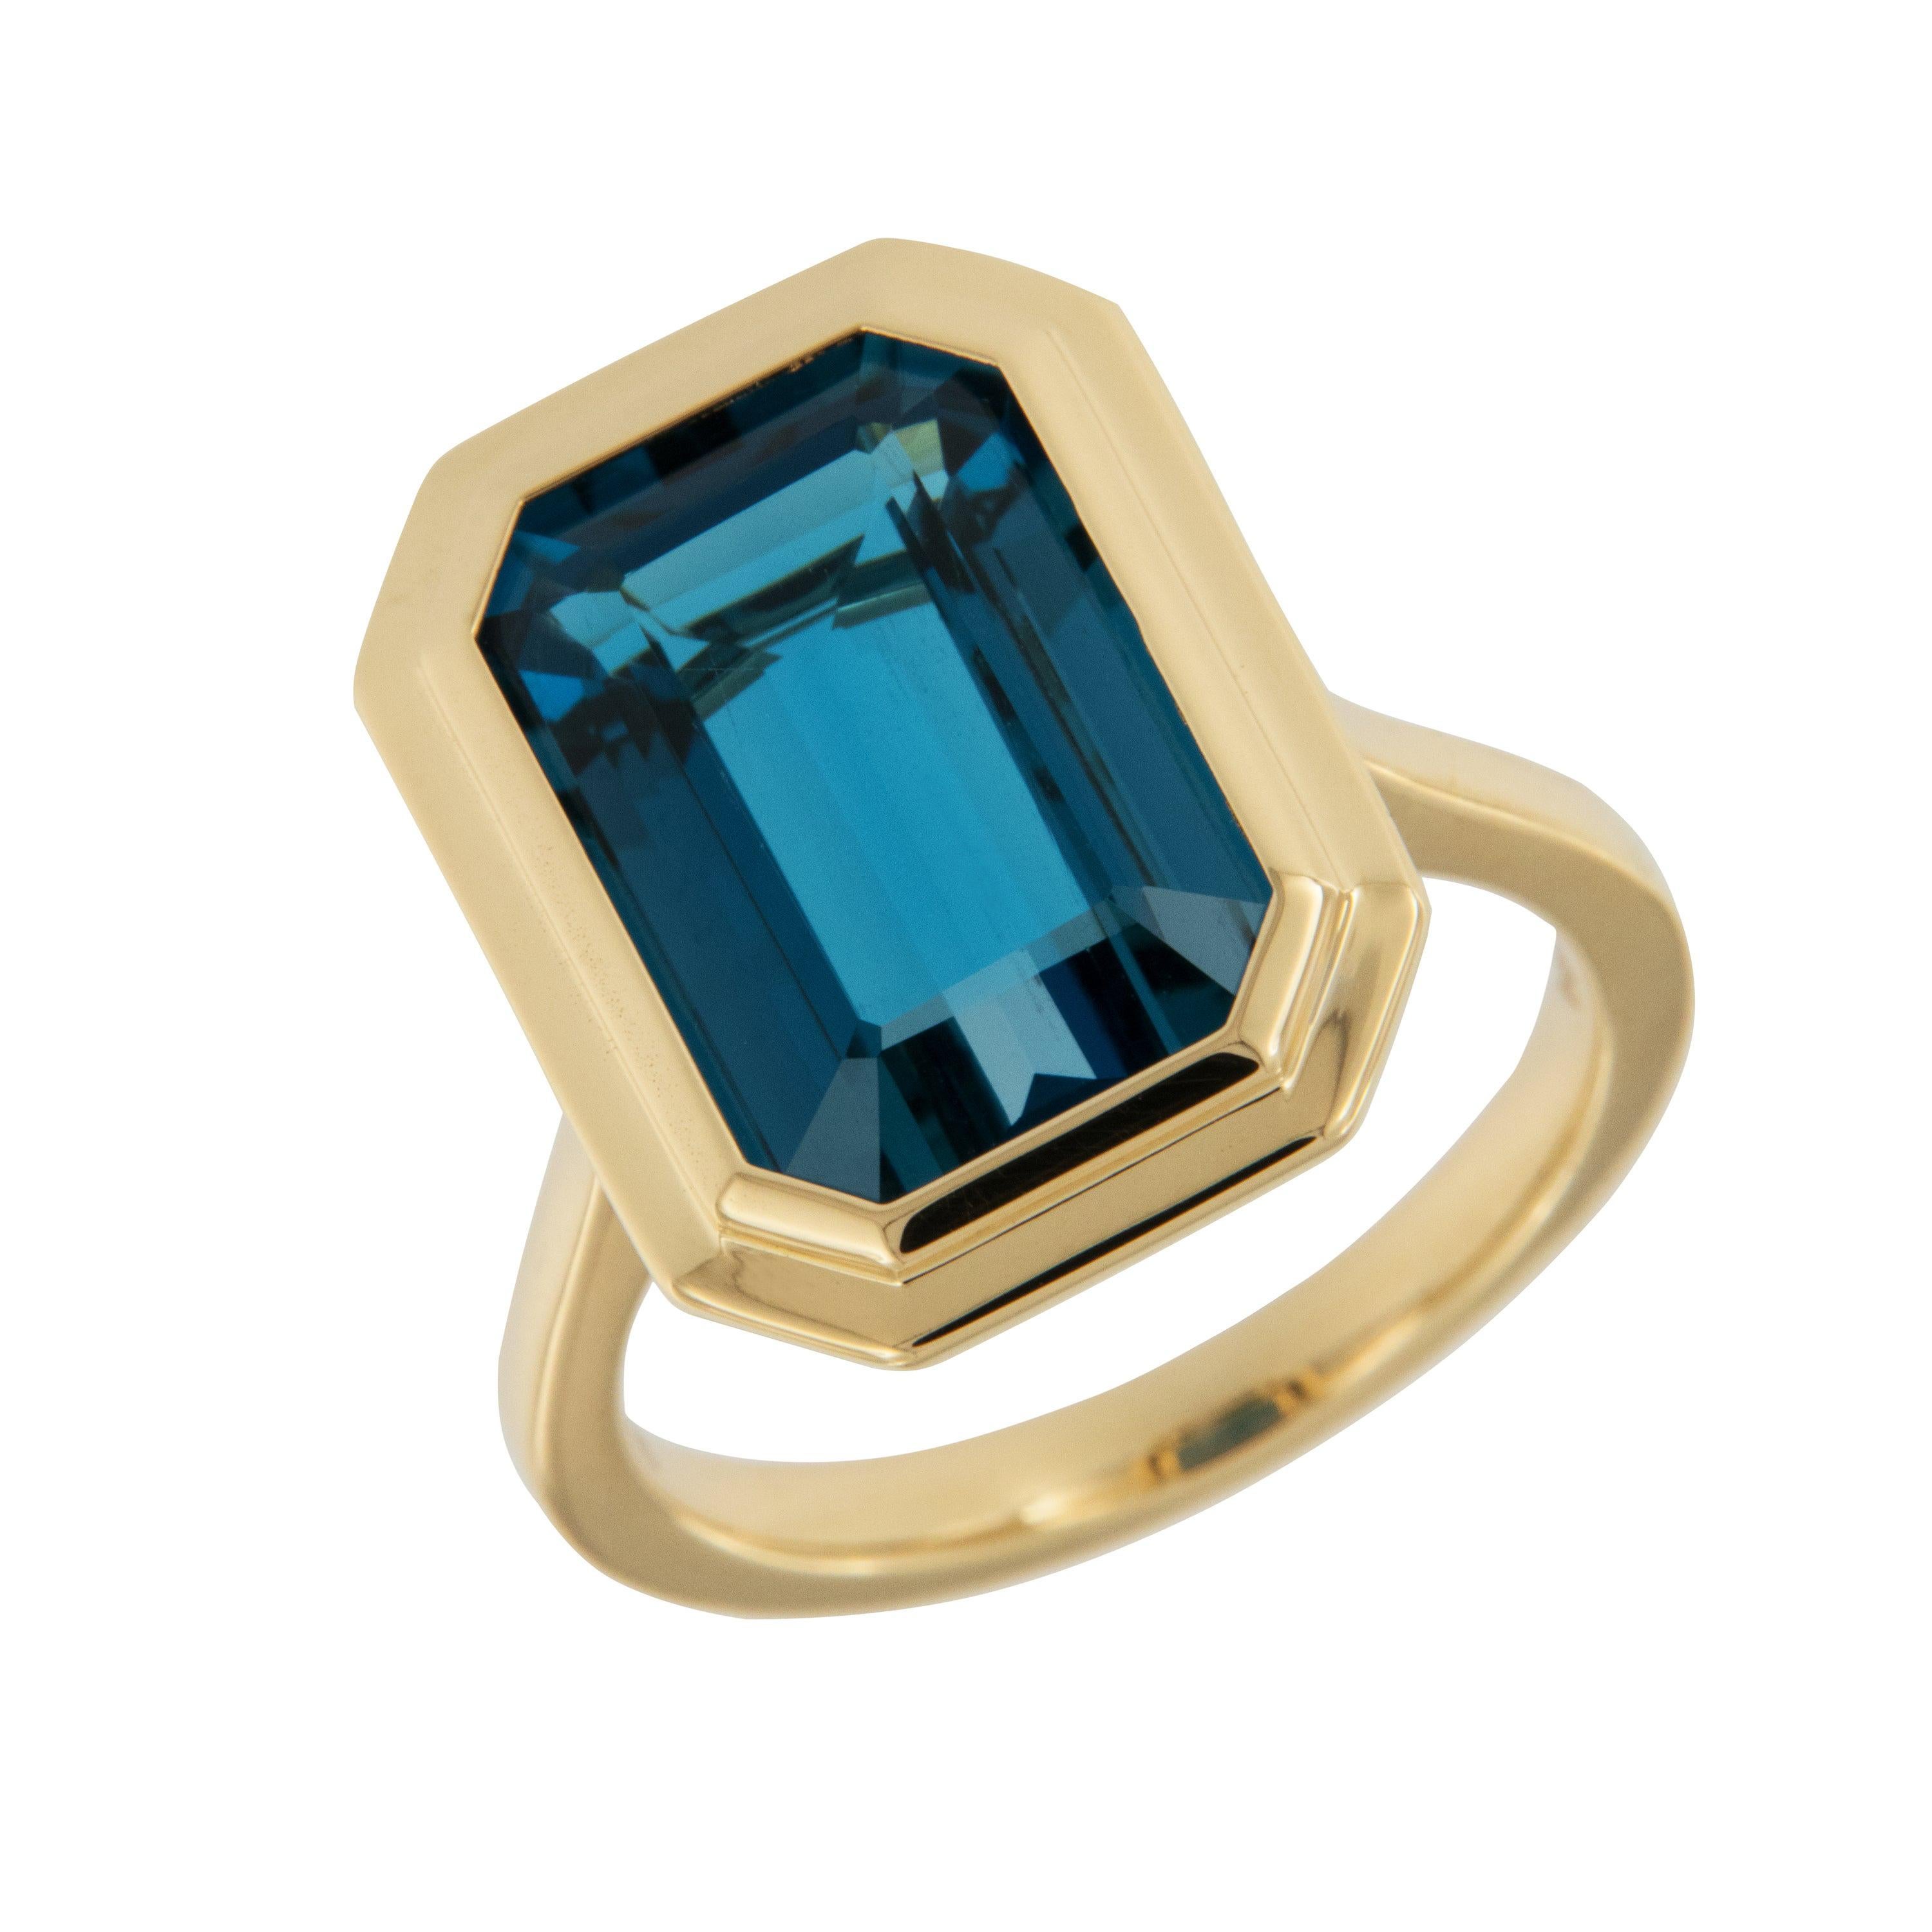 18 Karat Gold "Manhattan Collection" 9.48 Ct. London Blue Topaz Ring by Goshwara